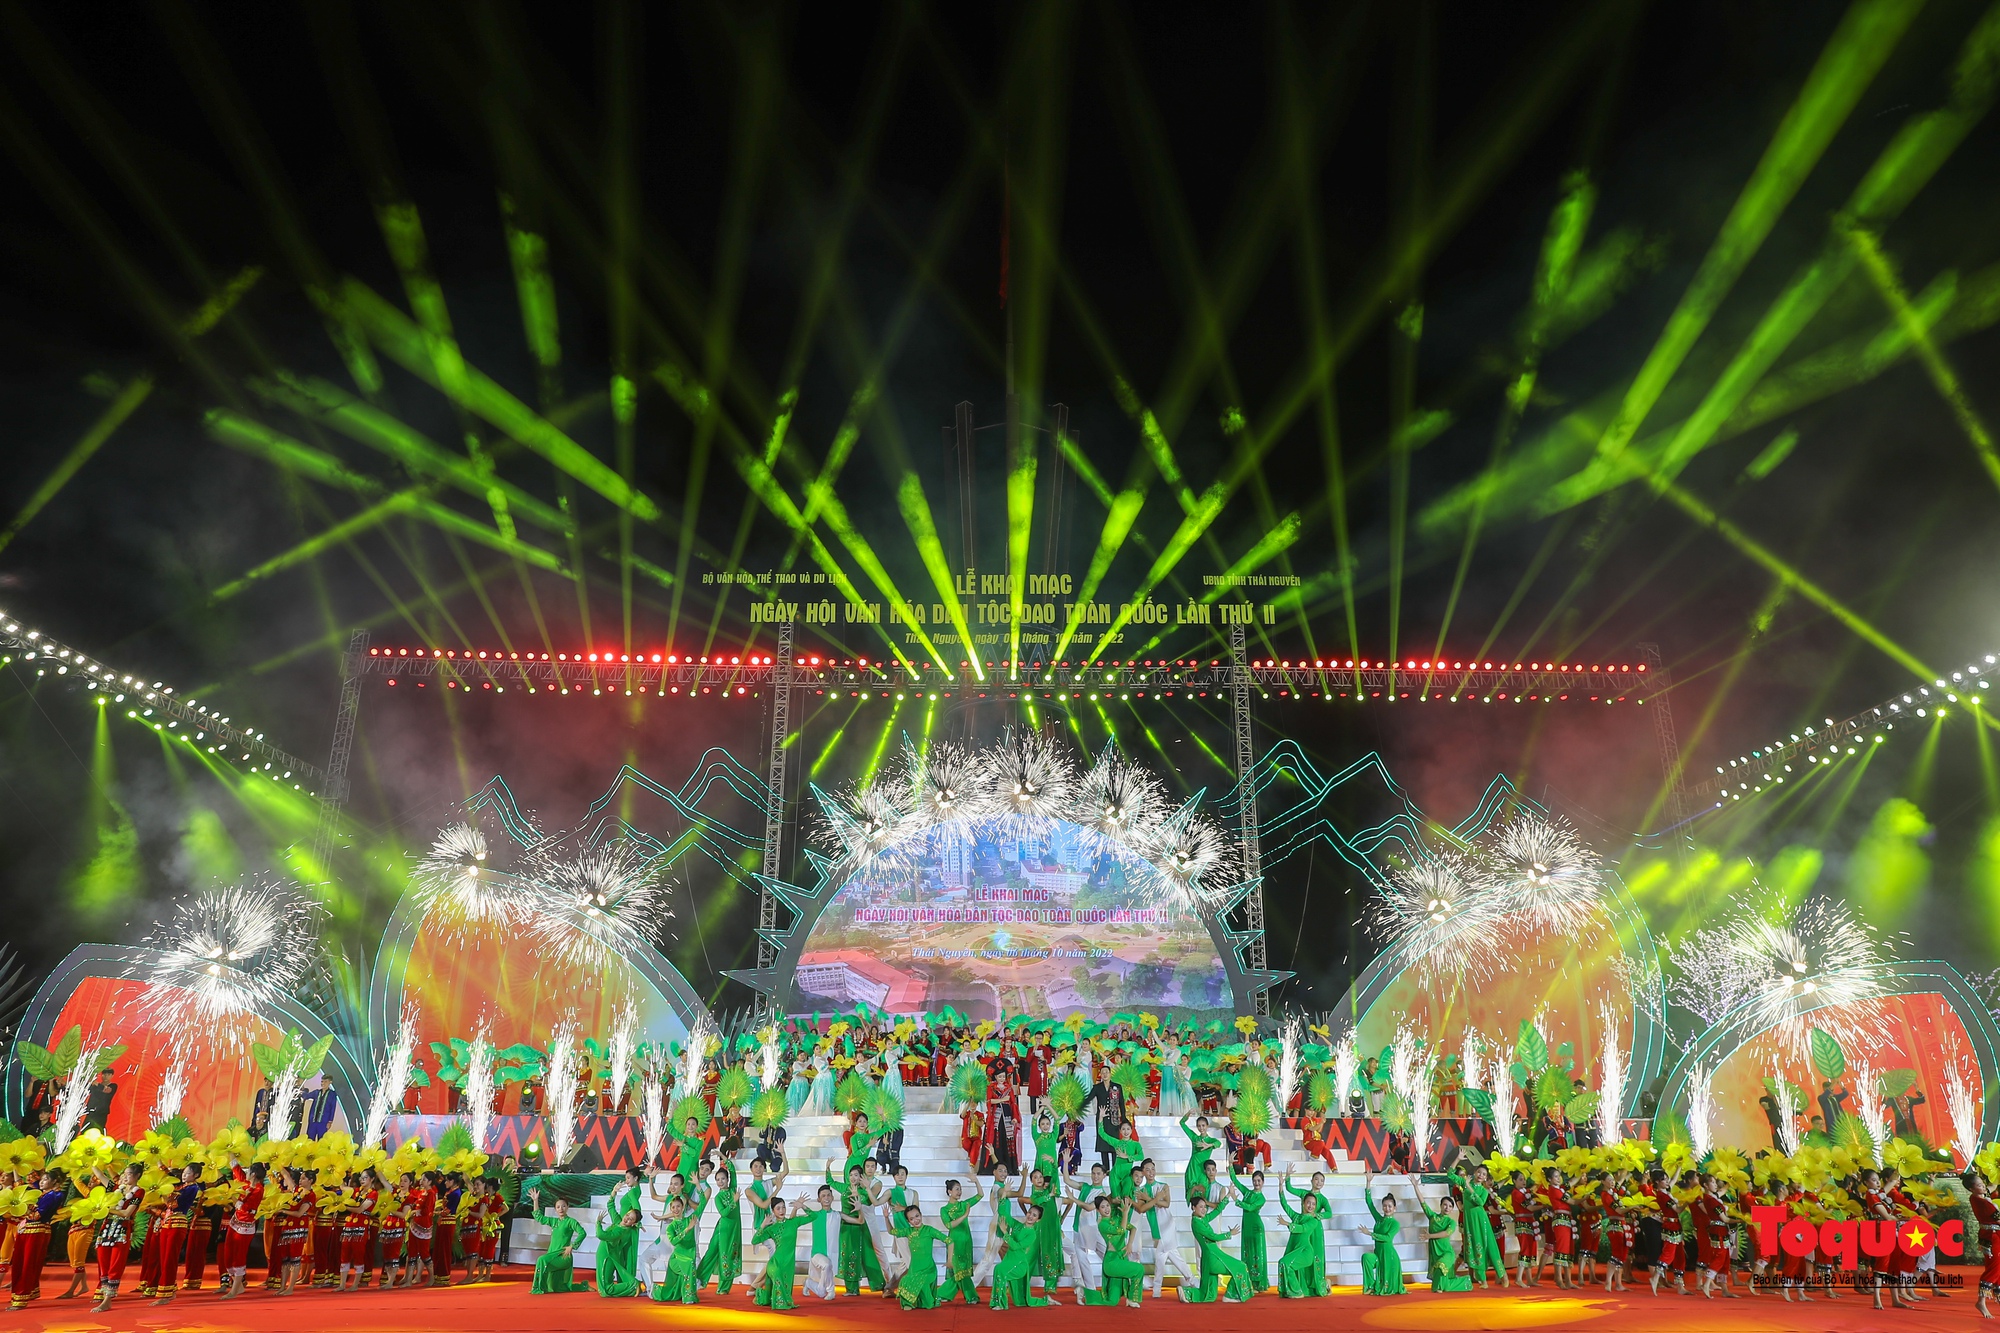 Chùm ảnh: Khai mạc Ngày hội Văn hóa dân tộc Dao toàn quốc lần thứ II năm 2022 - Ảnh 1.